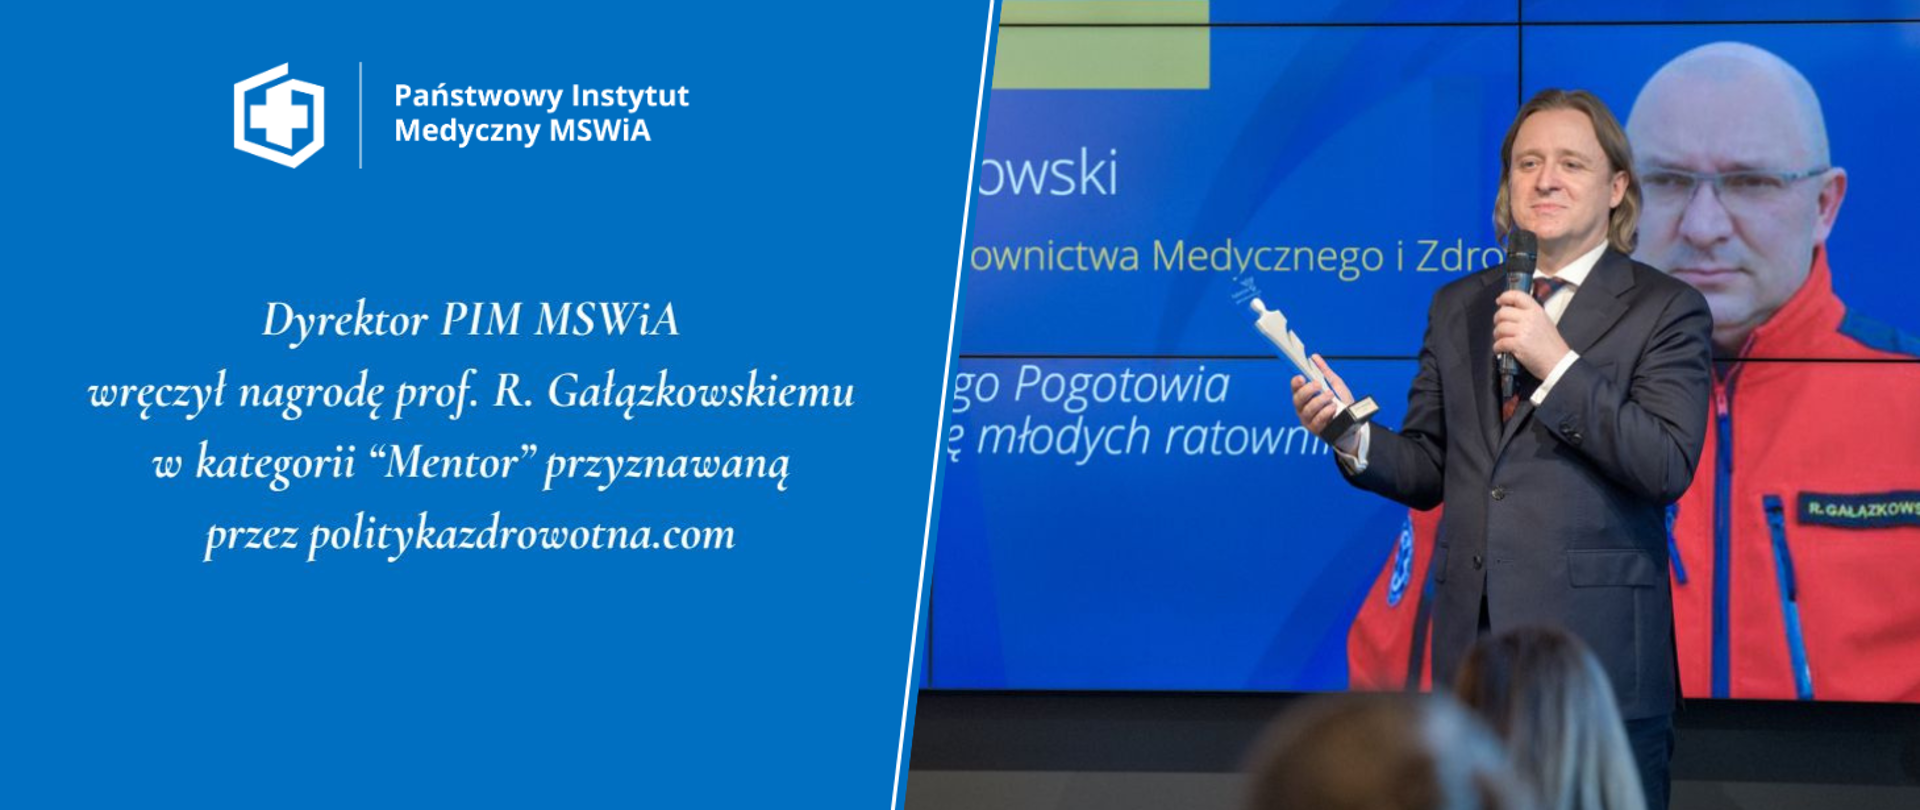 Dyrektor PIM MSWiA wręczył nagrodę prof. R. Gałązkowskiemu w kategorii "Mentor" przyznawaną przez politykazdrowotna.pl